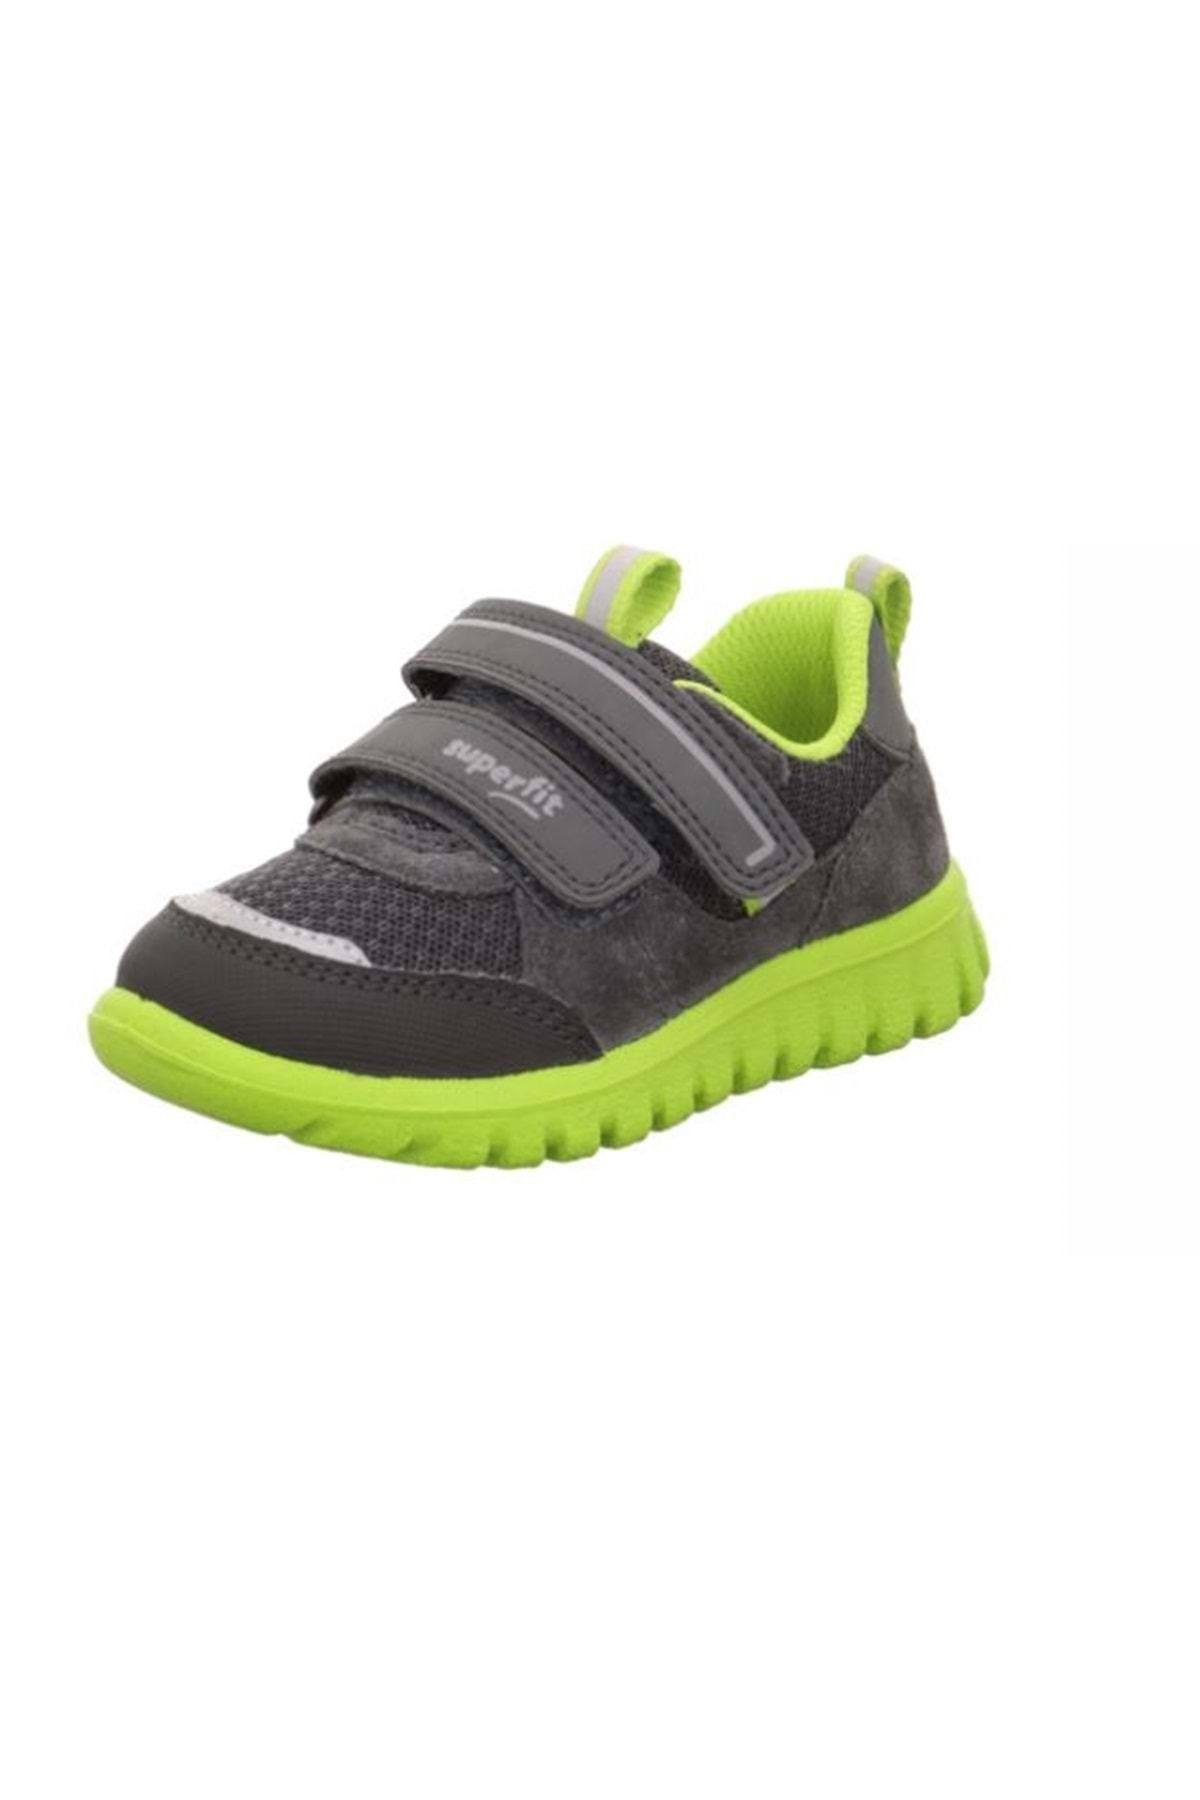 Superfit Erkekçocuk Spor Ayakkabı - Super Fıt - Yeşil Yeşil